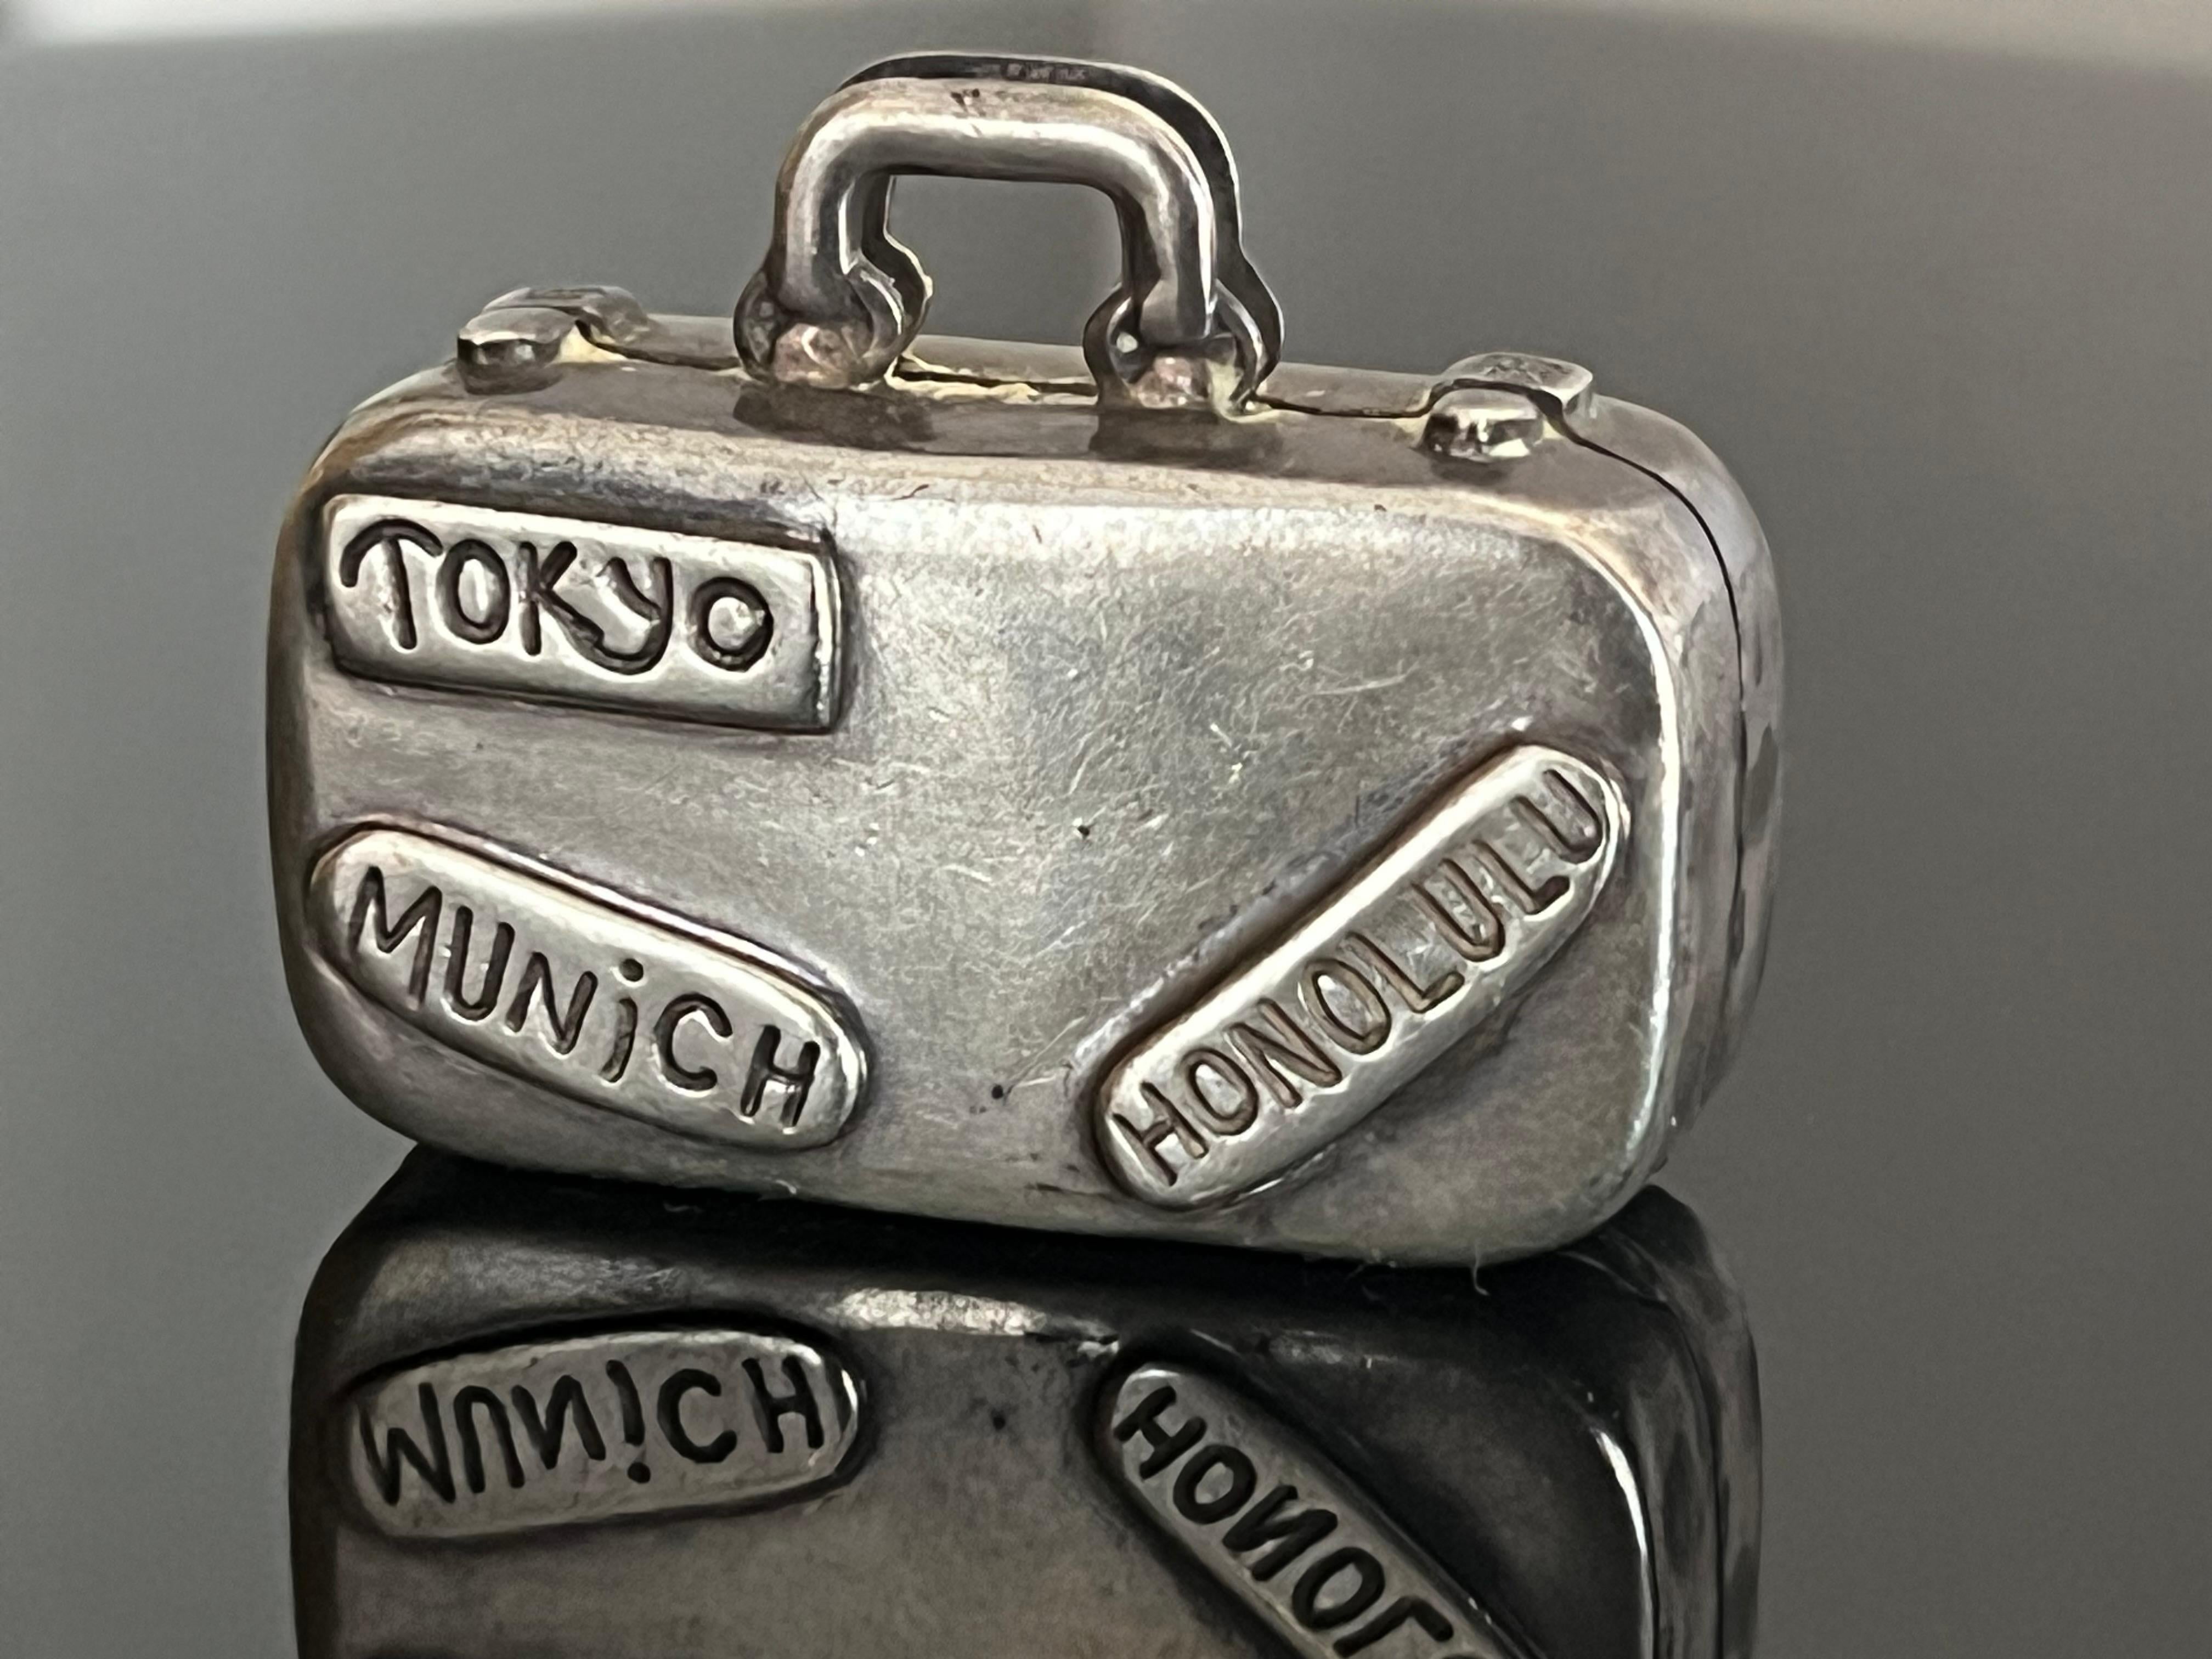 Charmante boîte à pilules vintage de Tiffany & Co. Boîte miniature en forme de valise, rare et hors production. D'un côté, on peut lire TOKYO, MUNICH et HONOLULU, de l'autre, LONDRES, BEVERLY HILLS et NEW YORK. L'AT&T 925 figure sur chaque boucle de